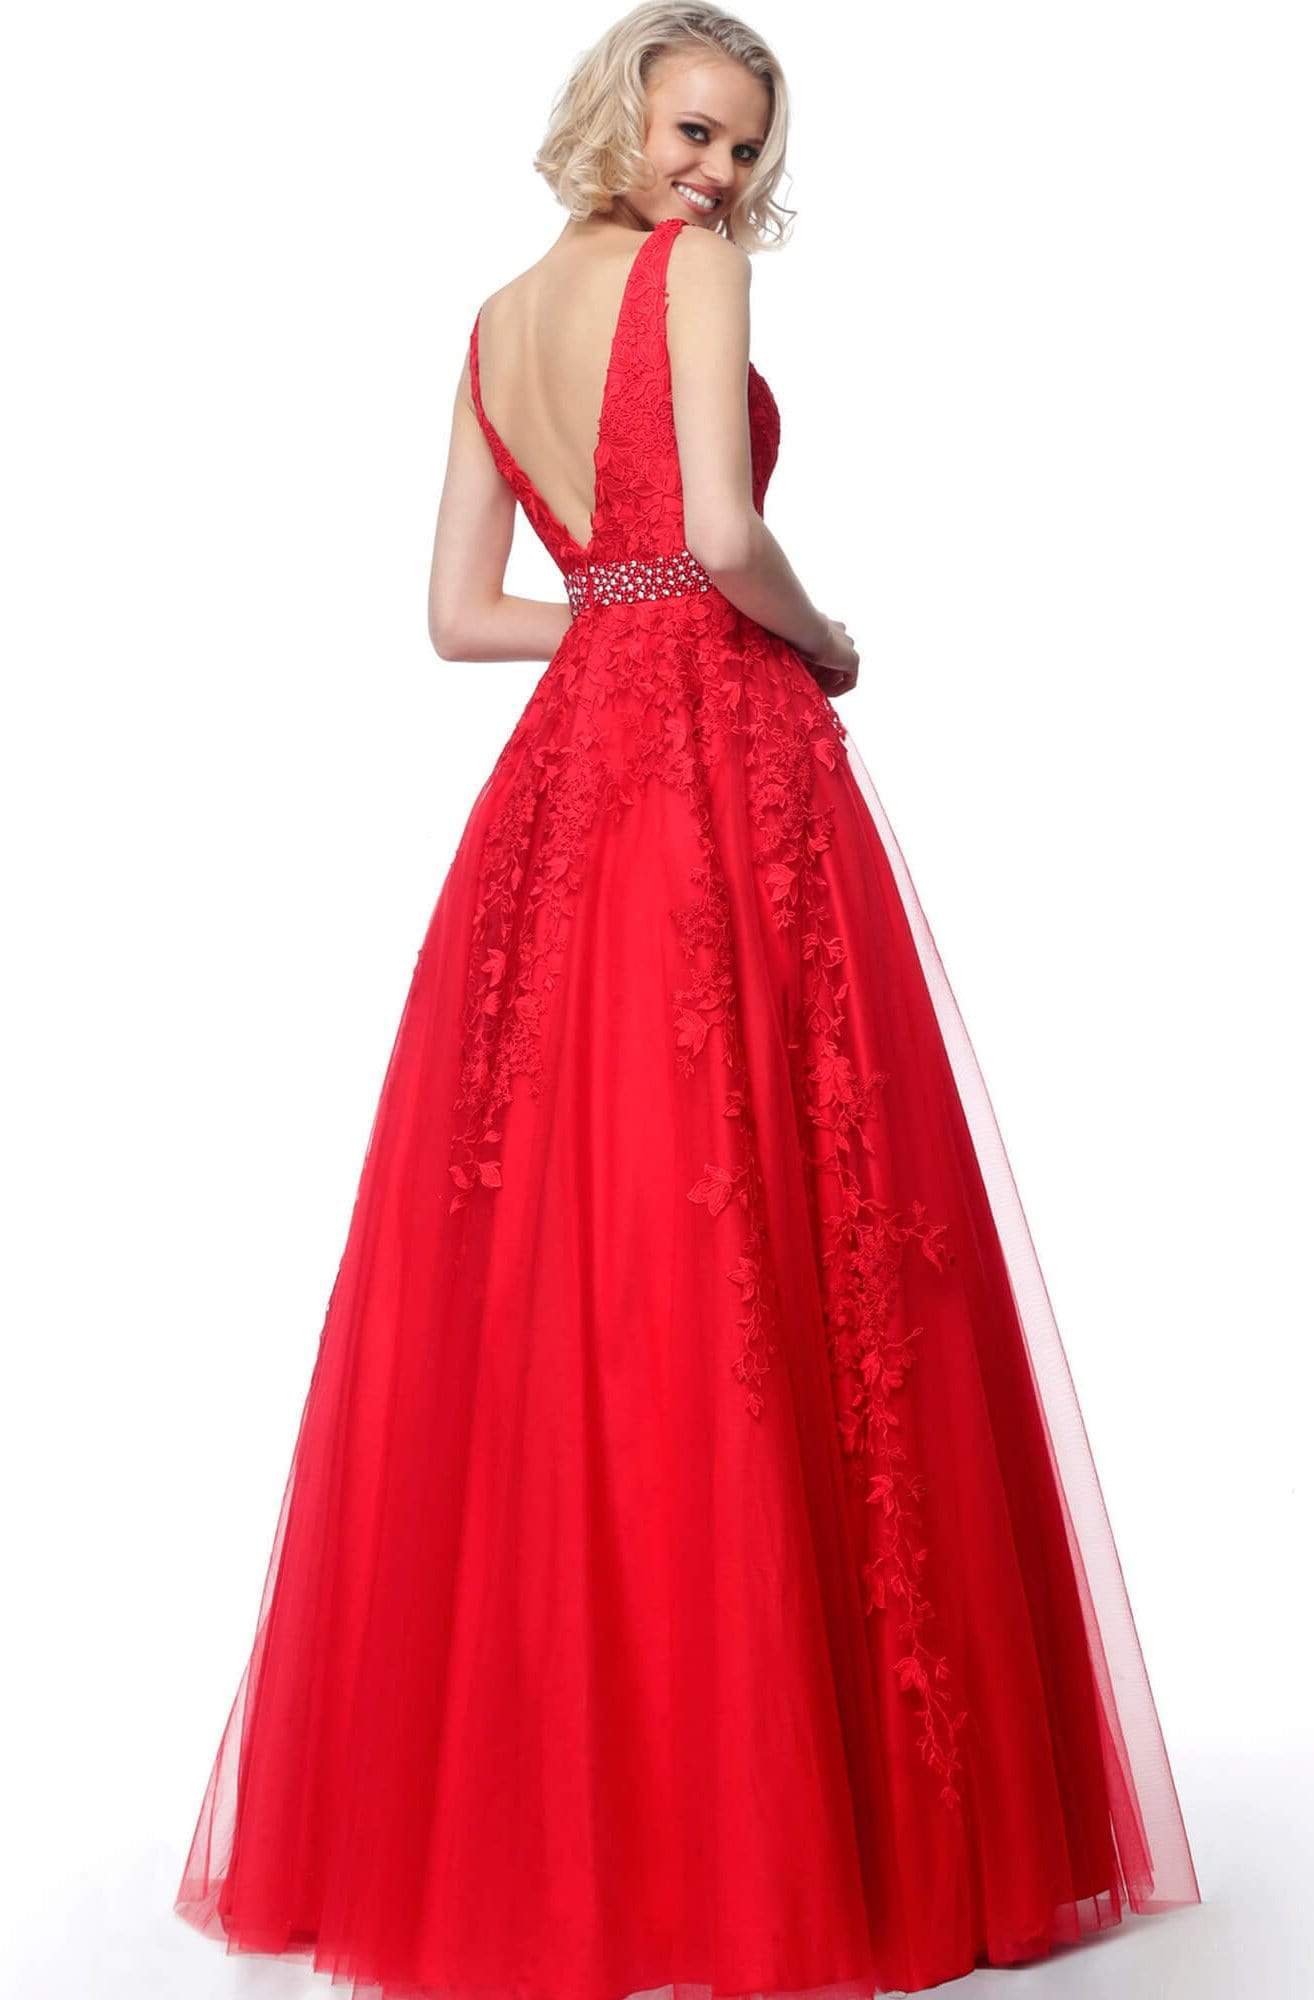 Jovani - JVN68258 Embellished Lace Deep V-neck Ballgown Special Occasion Dress